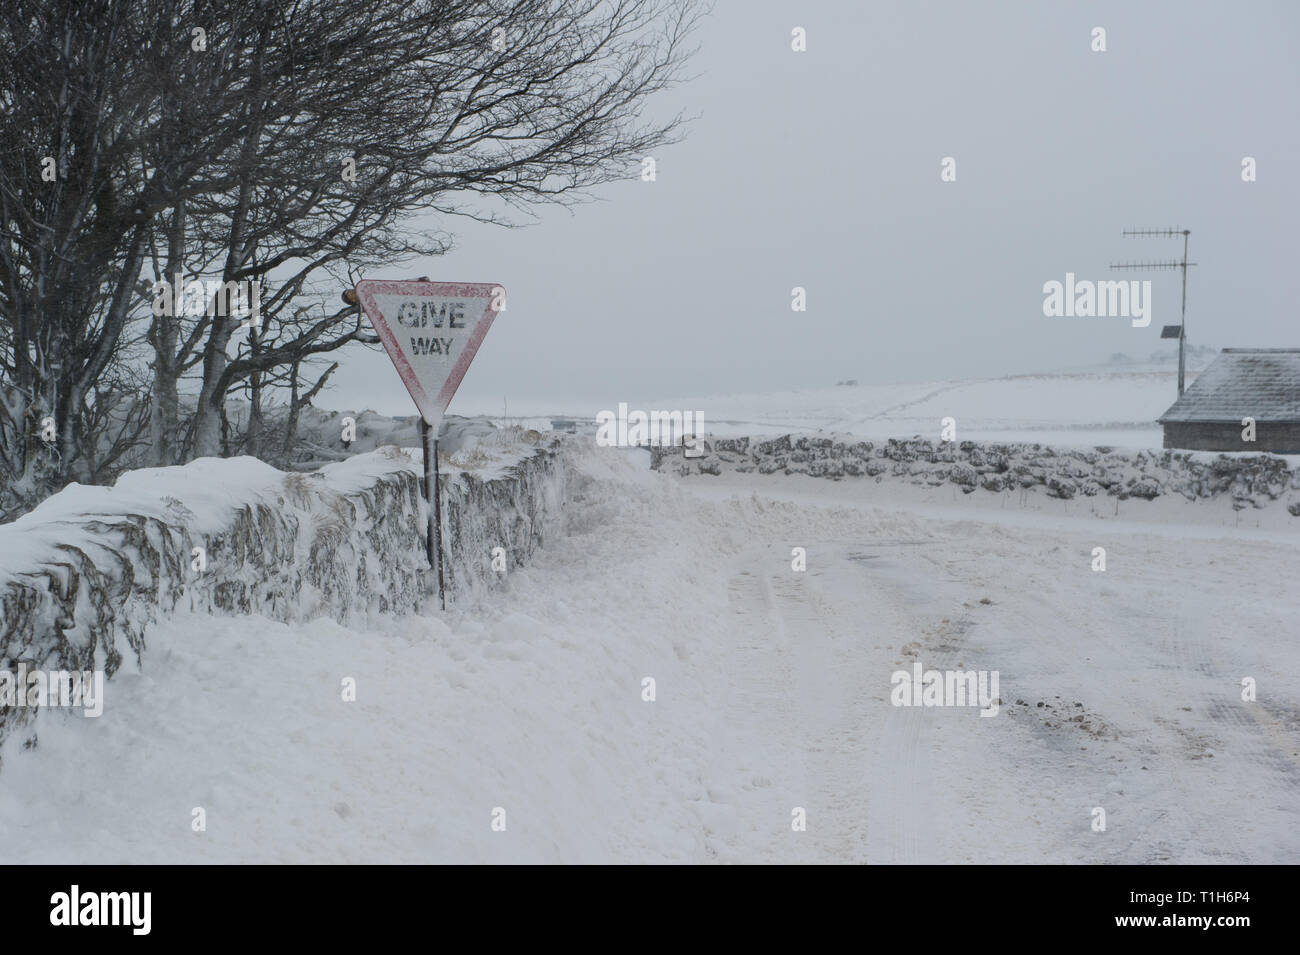 Cruce de carreteras cubiertas de nieve en la zona rural, con ceder la señal de advertencia cubierto de nieve Foto de stock